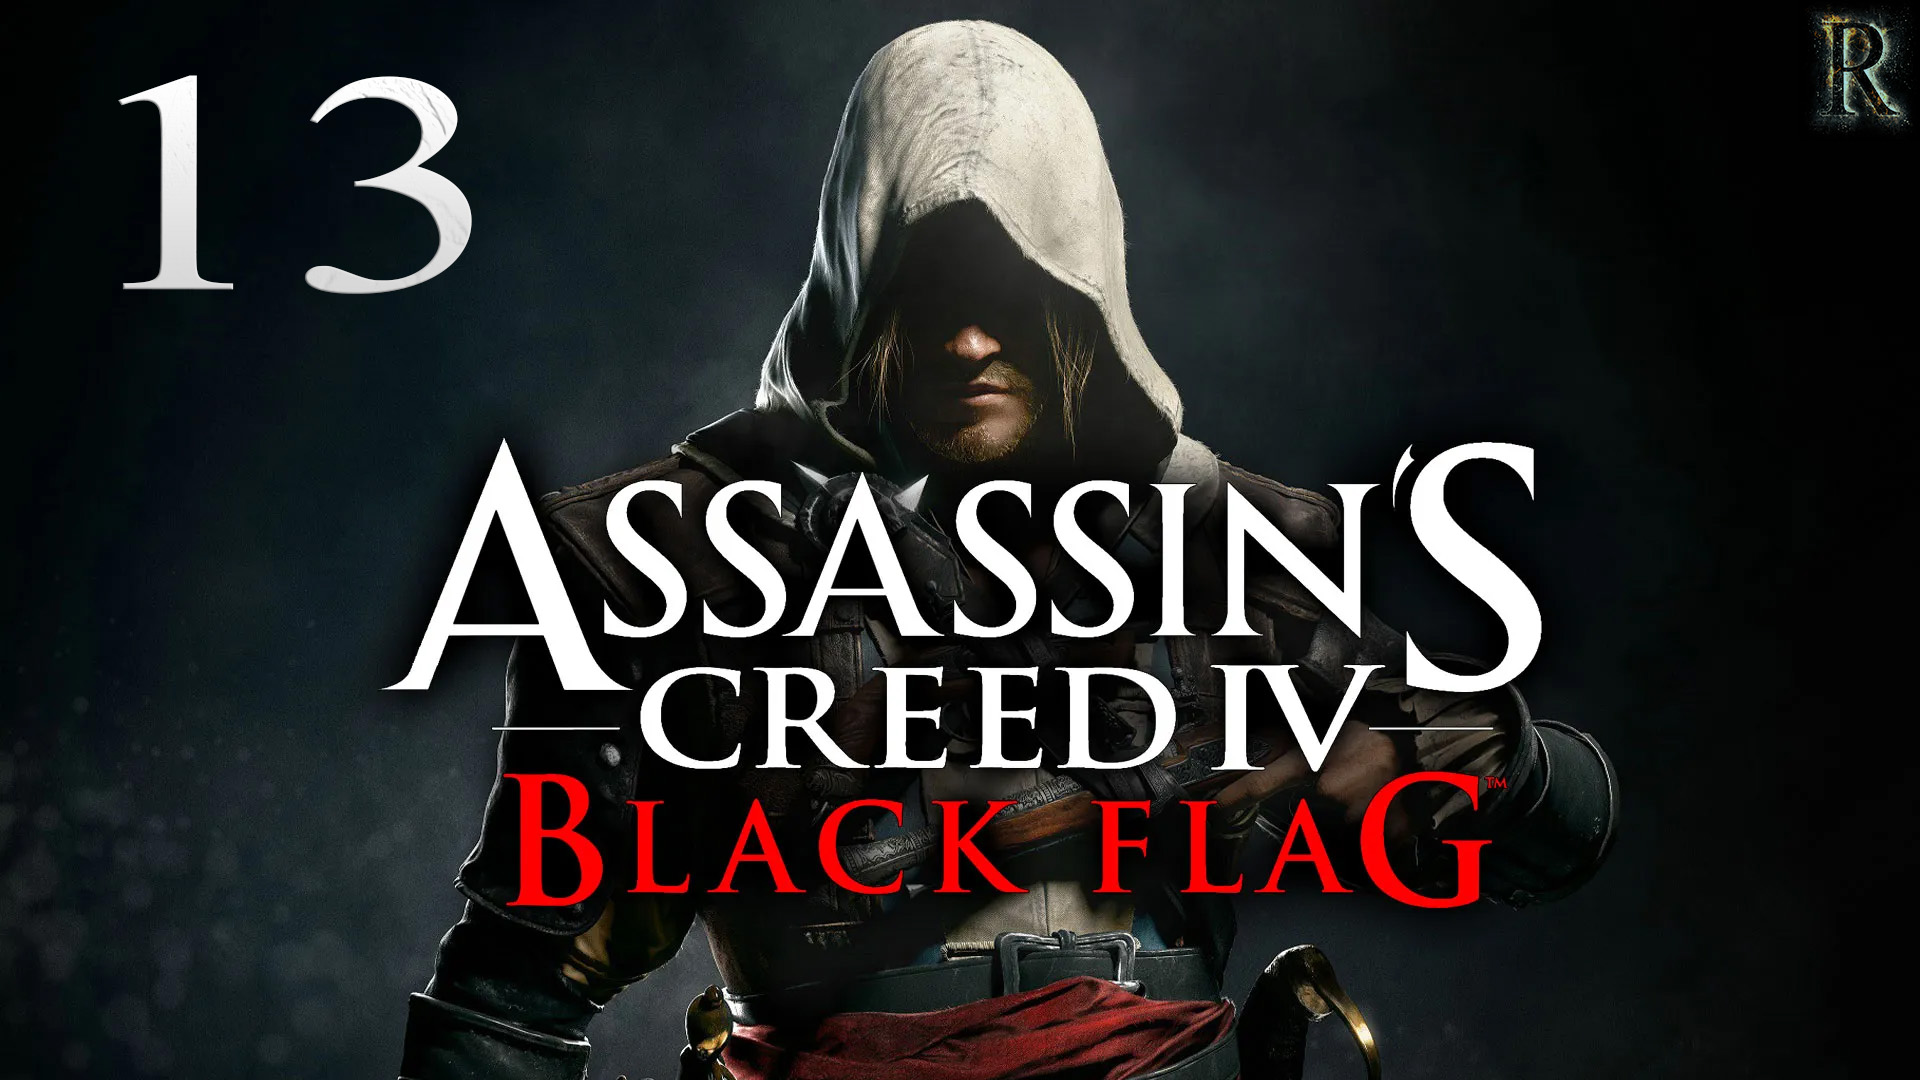 Assassin's Creed IV Black Flag -  13 серия. (Мы требуем переговоров / Пороховой заговор/ Брандер)